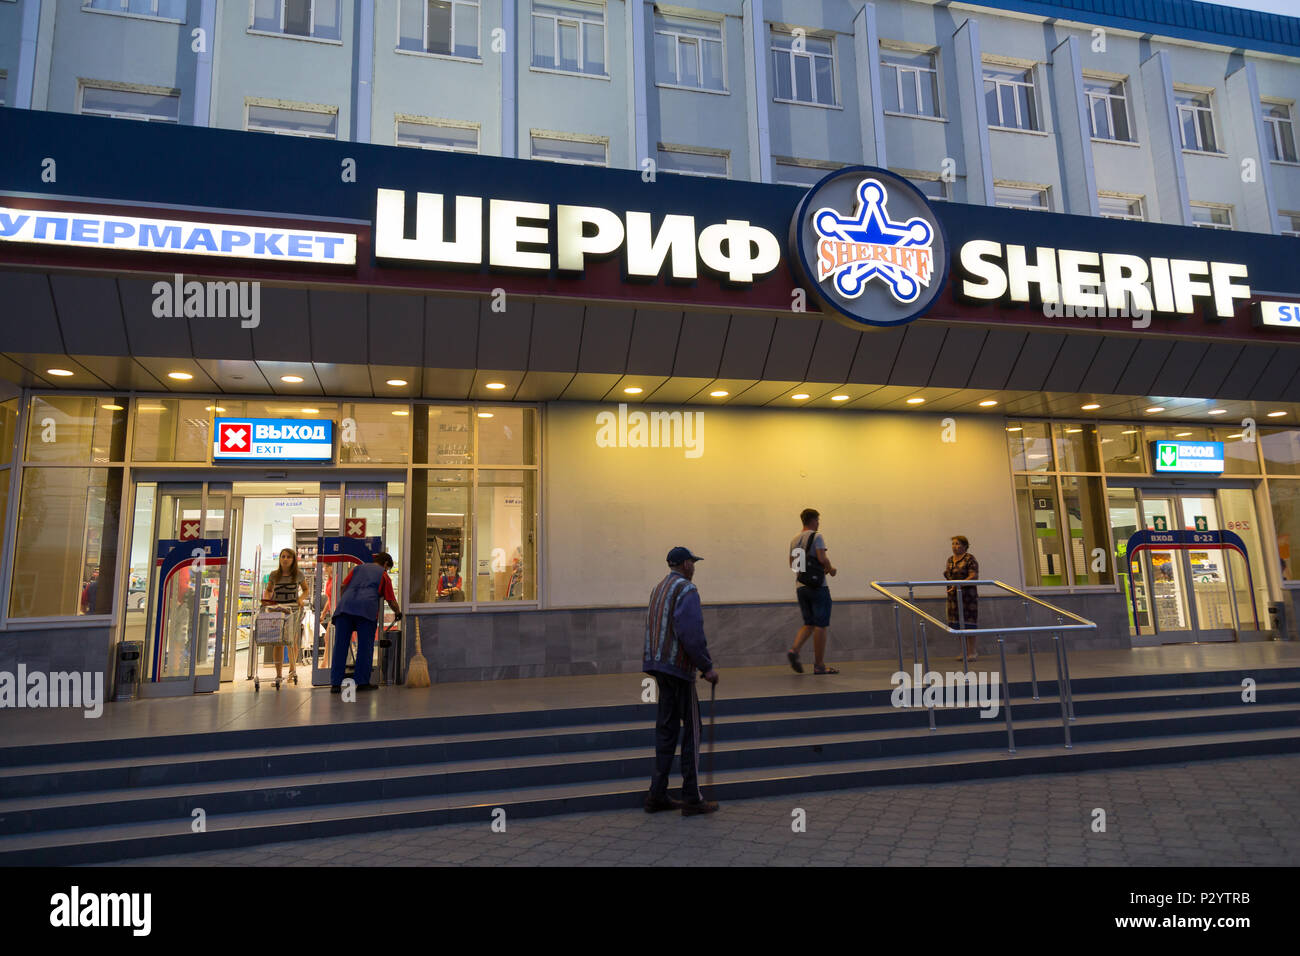 25.08.2016, Bender, la Transnistrie, la Moldavie - Une branche de la Sheriff chaîne de supermarchés. Il appartient au groupe multiculturel le shérif, la plus grande comp Banque D'Images